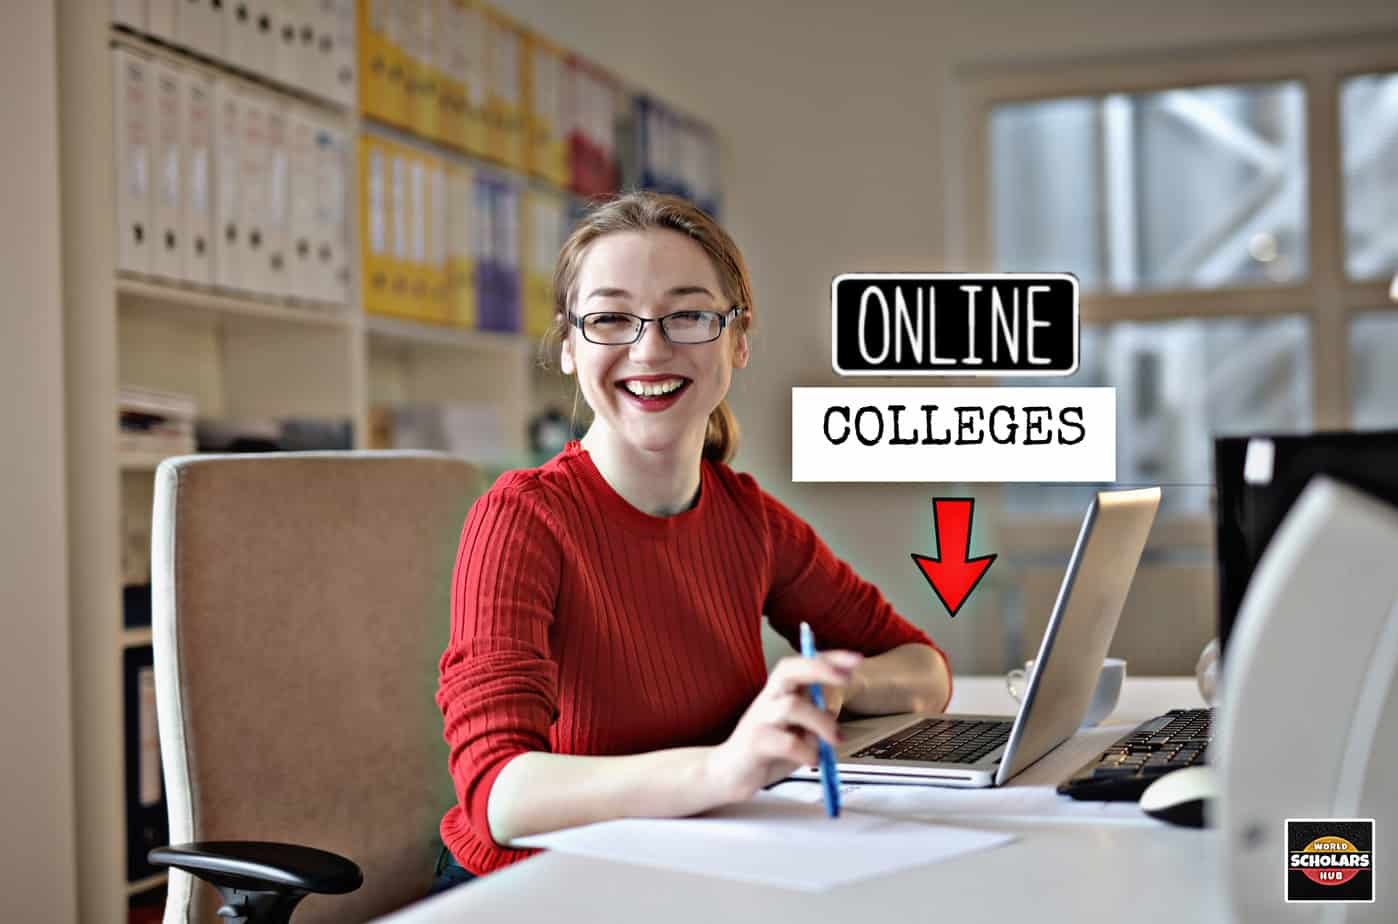 Online vysoké školy, které poskytují notebooky